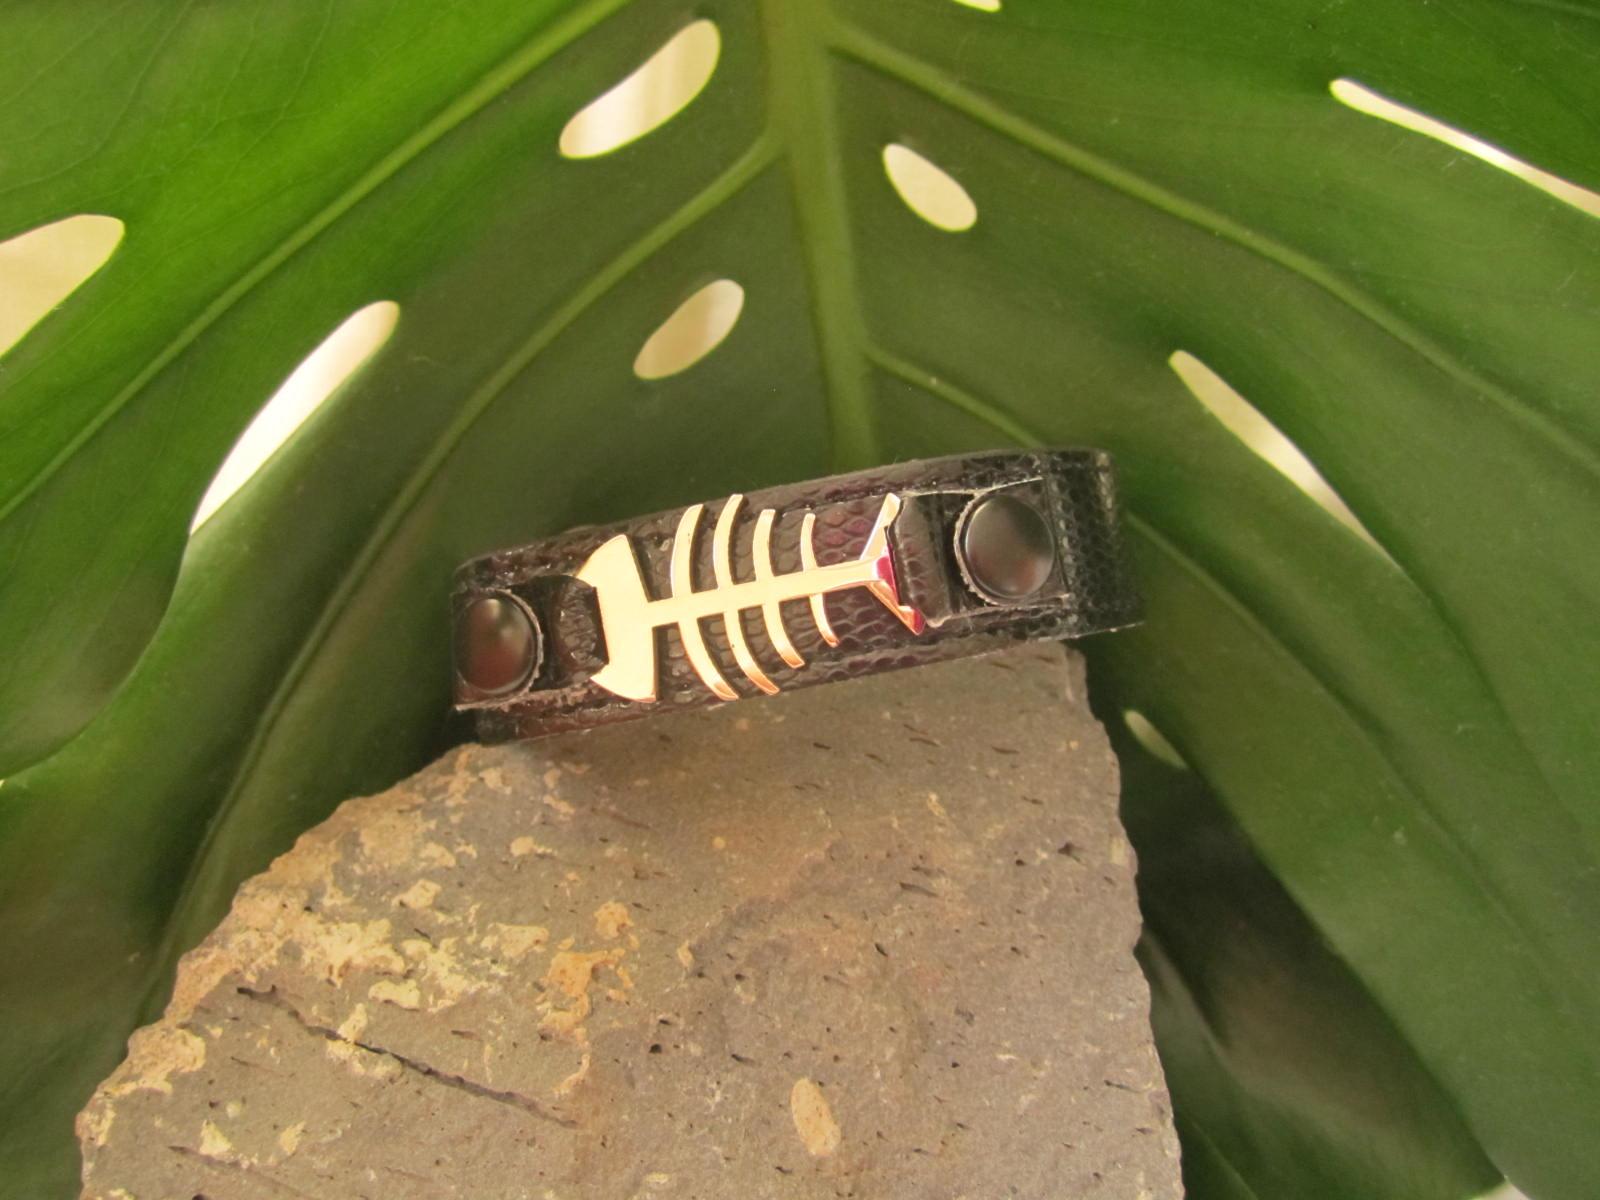 PVC Leather Belt Buckle Bracelet w/ Stainless Steel Fishbone Watch-Style